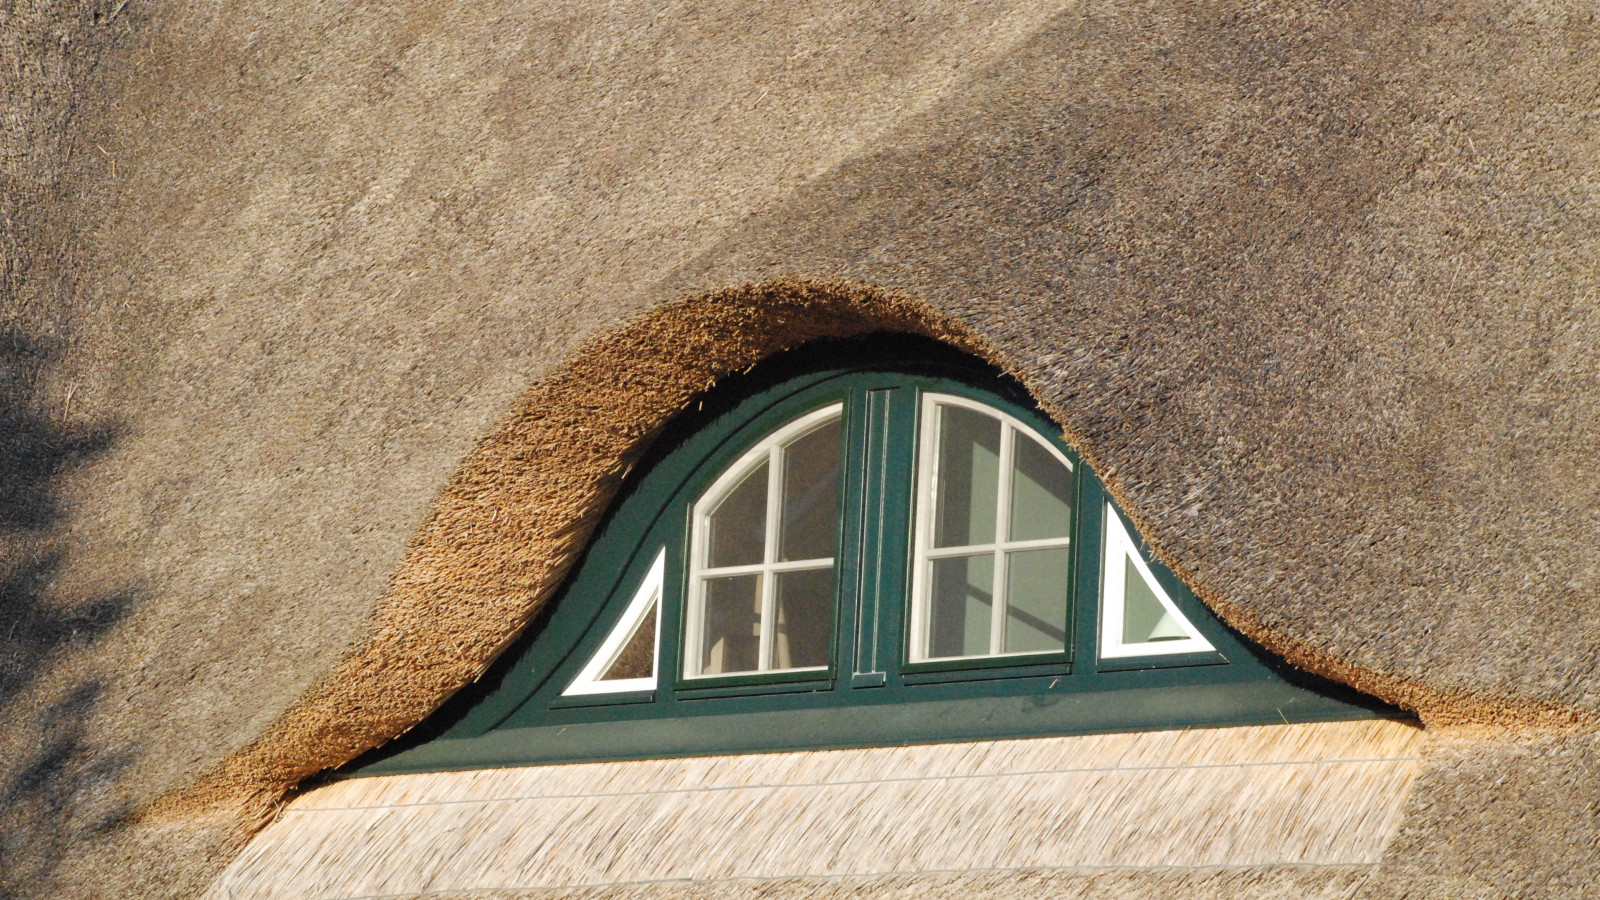 Reetdach eines Ferienhauses des Strandhotel Dünenmeers